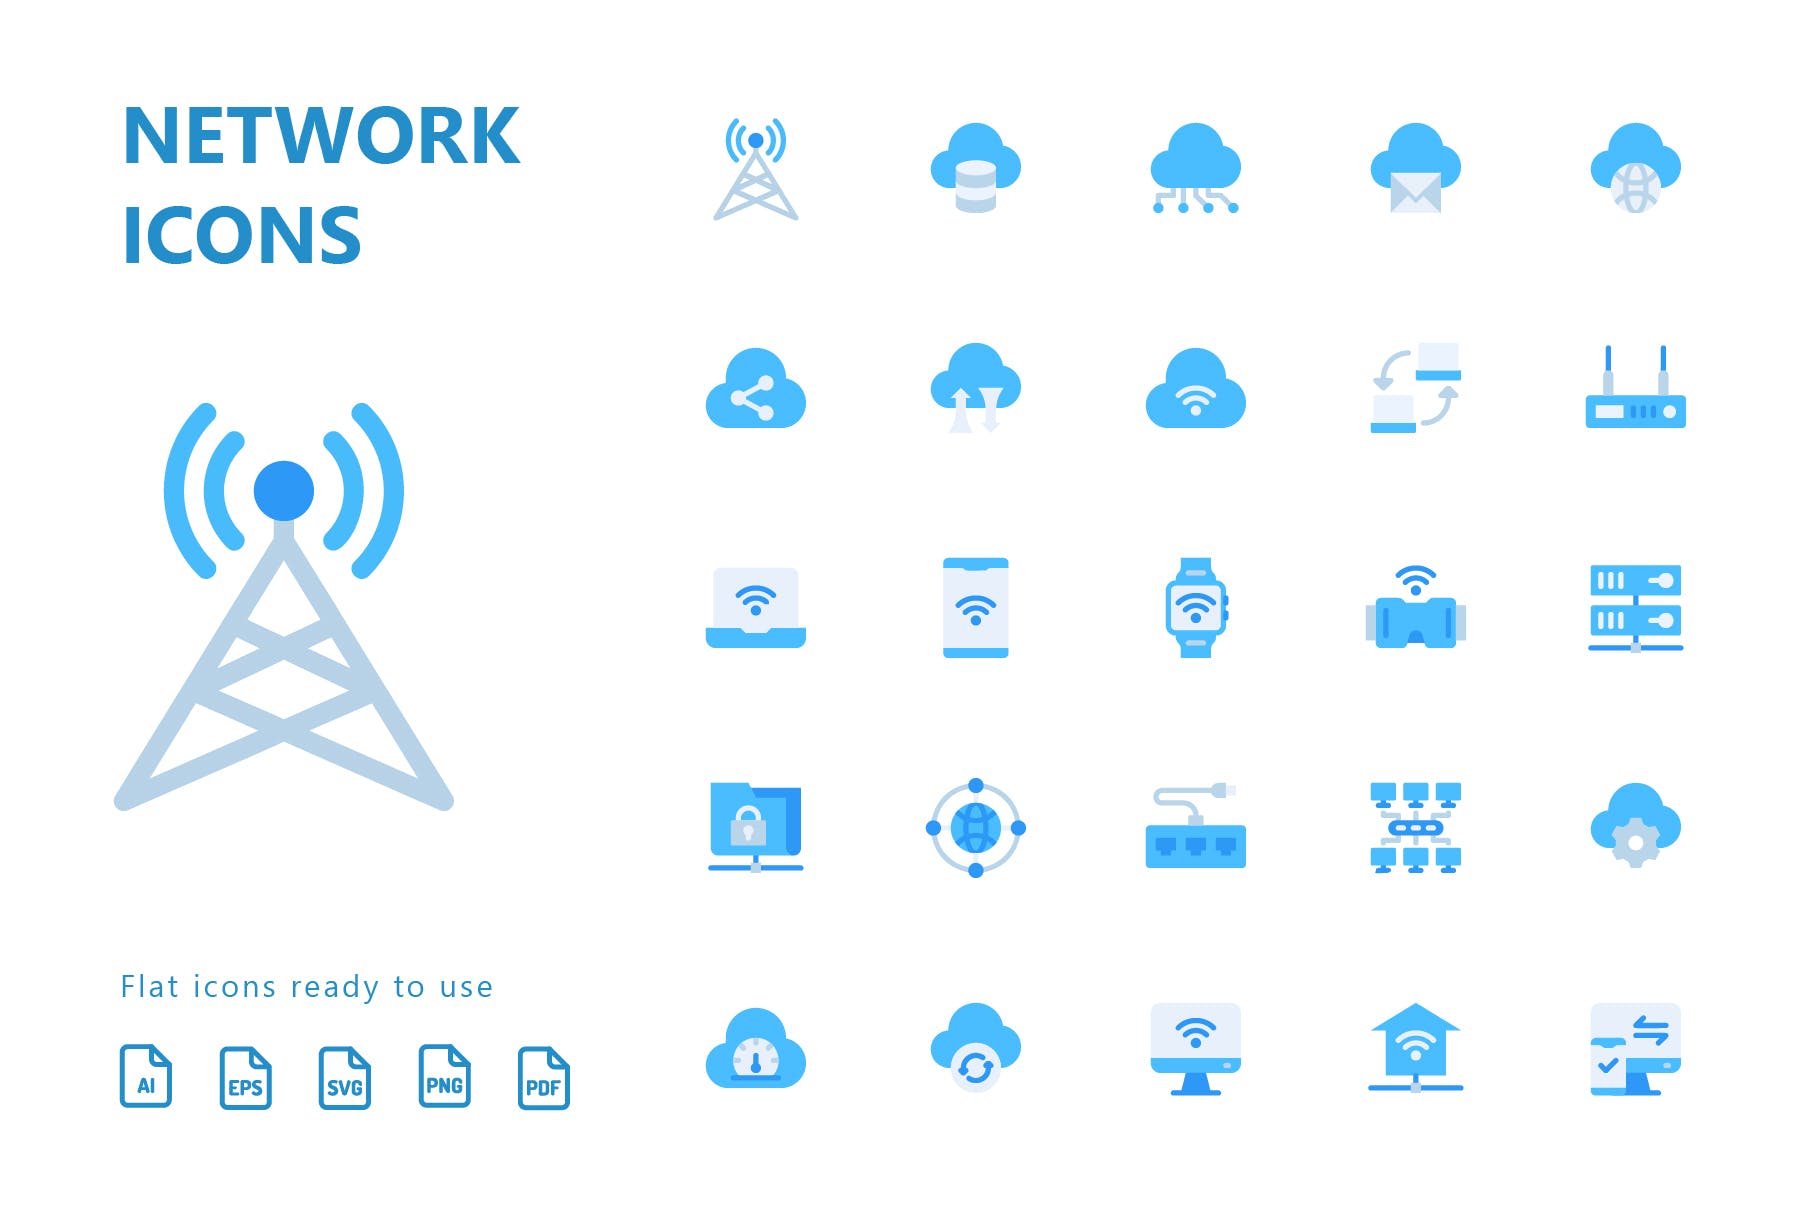 网络科技主题扁平化矢量蚂蚁素材精选图标 Network Flat Icons插图(1)